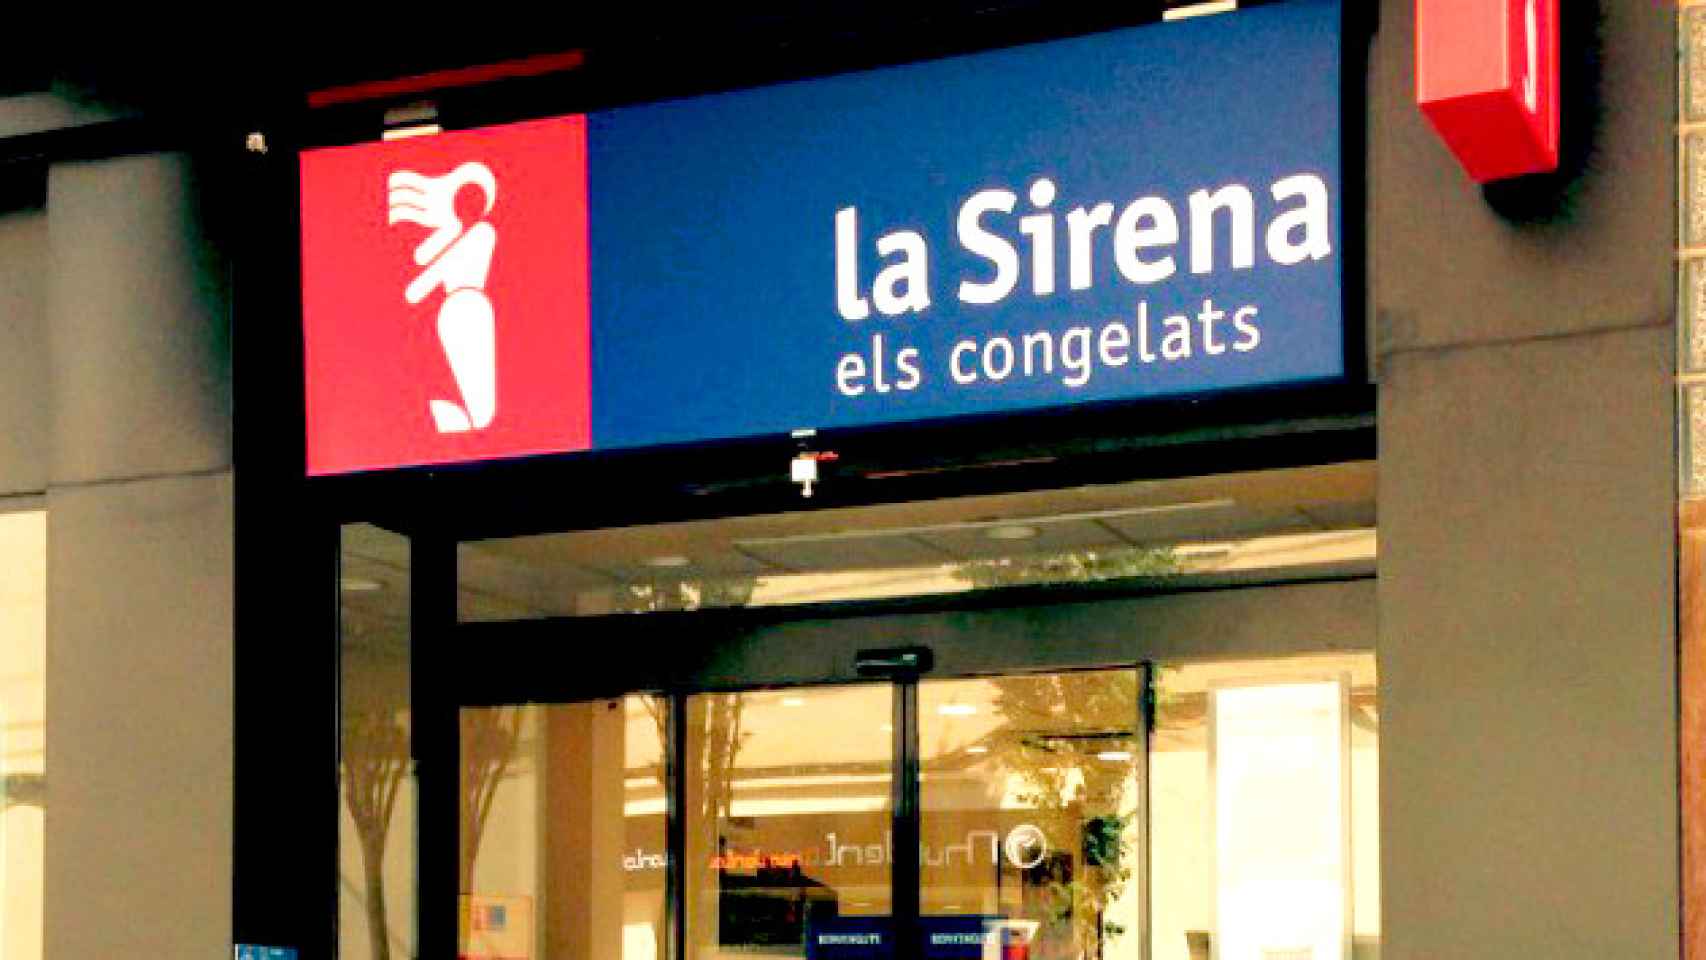 Una de las tiendas de congelados La Sirena / CG